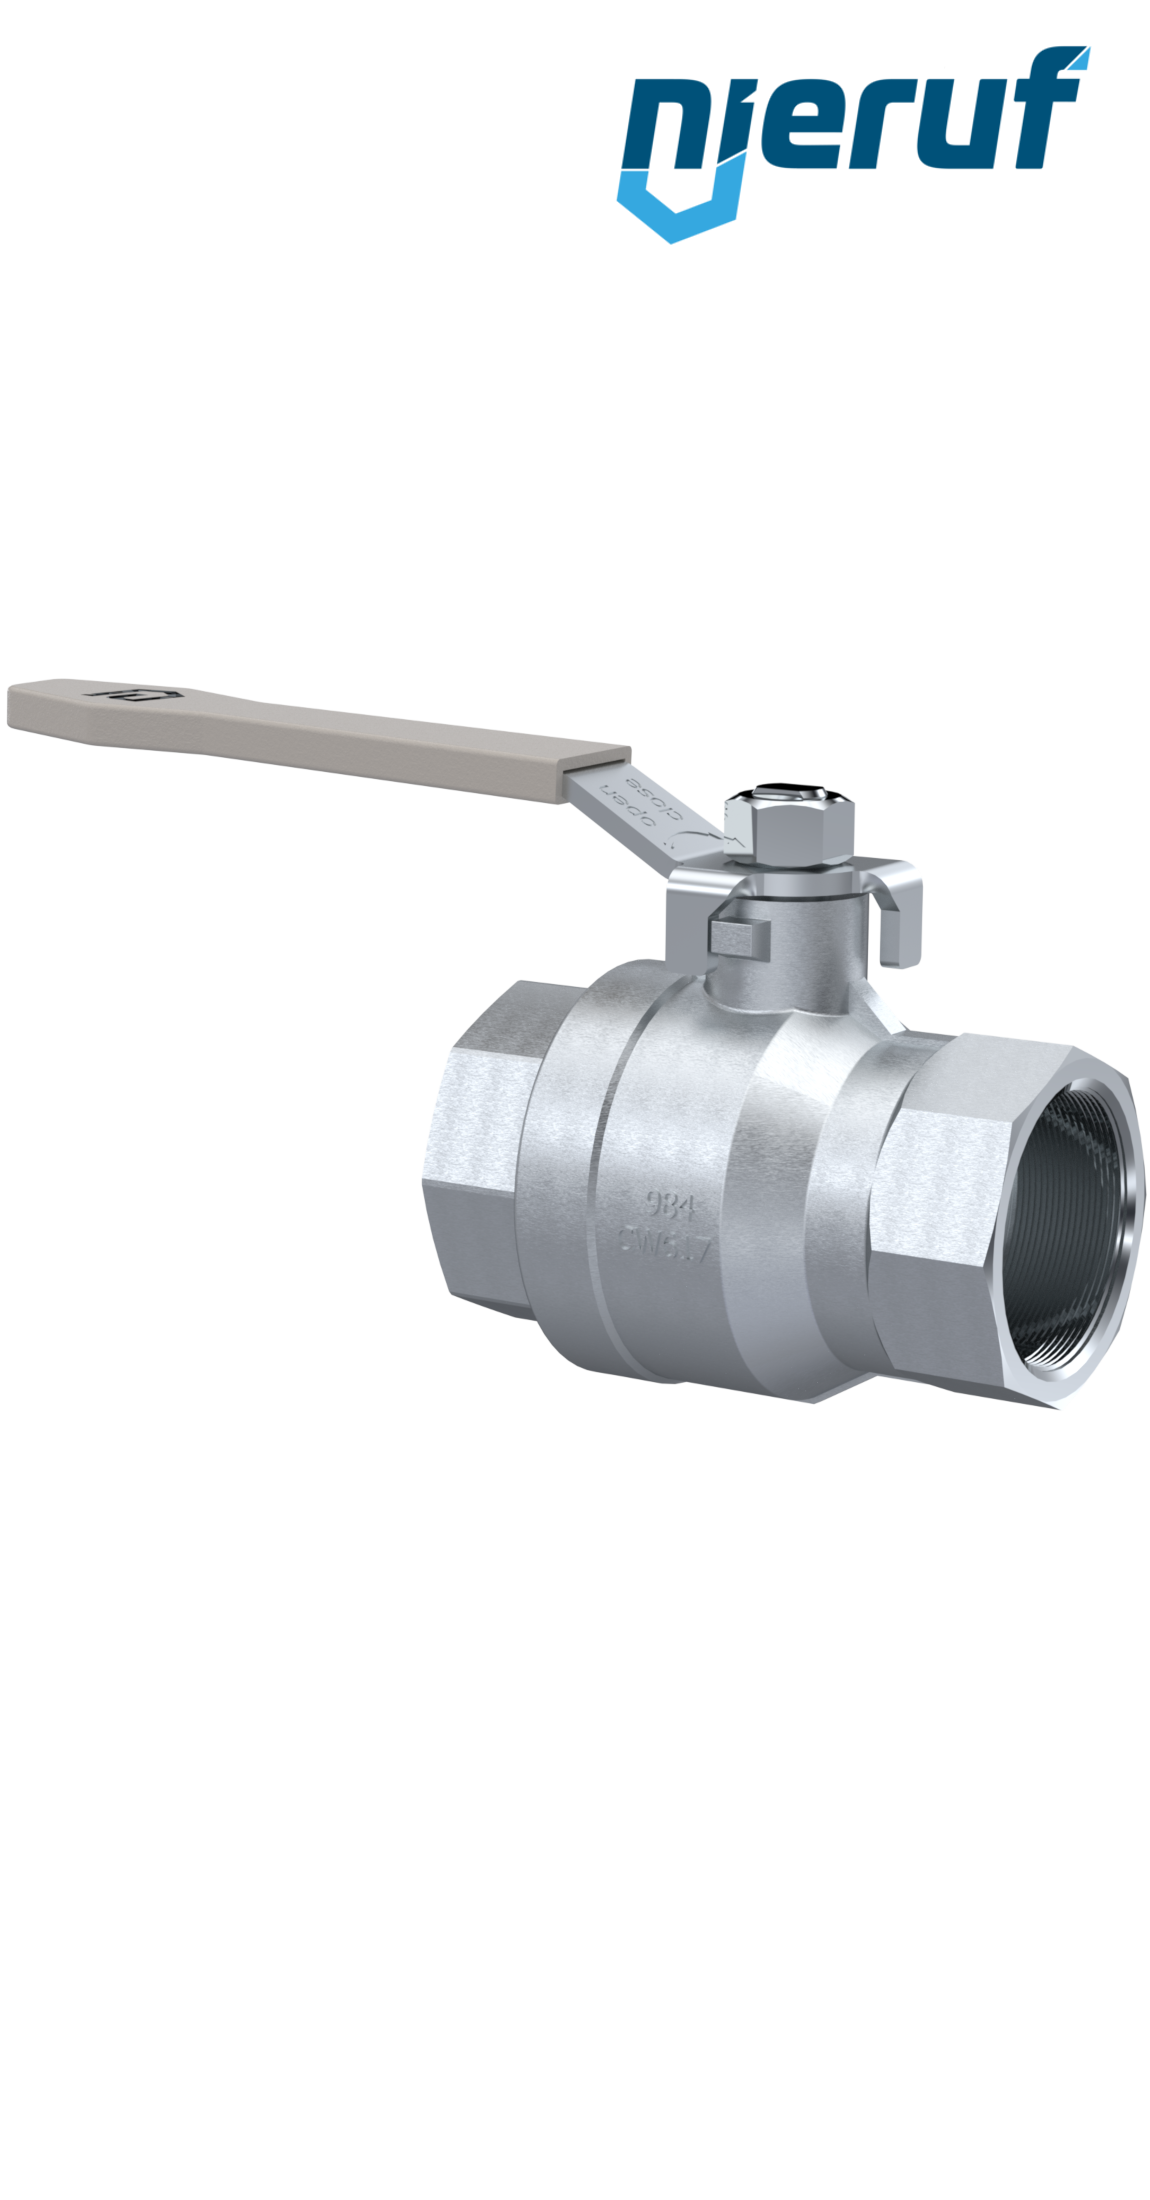 ball valve made of brass DN15 - 1/2" inch GK02 gas & water DVGW